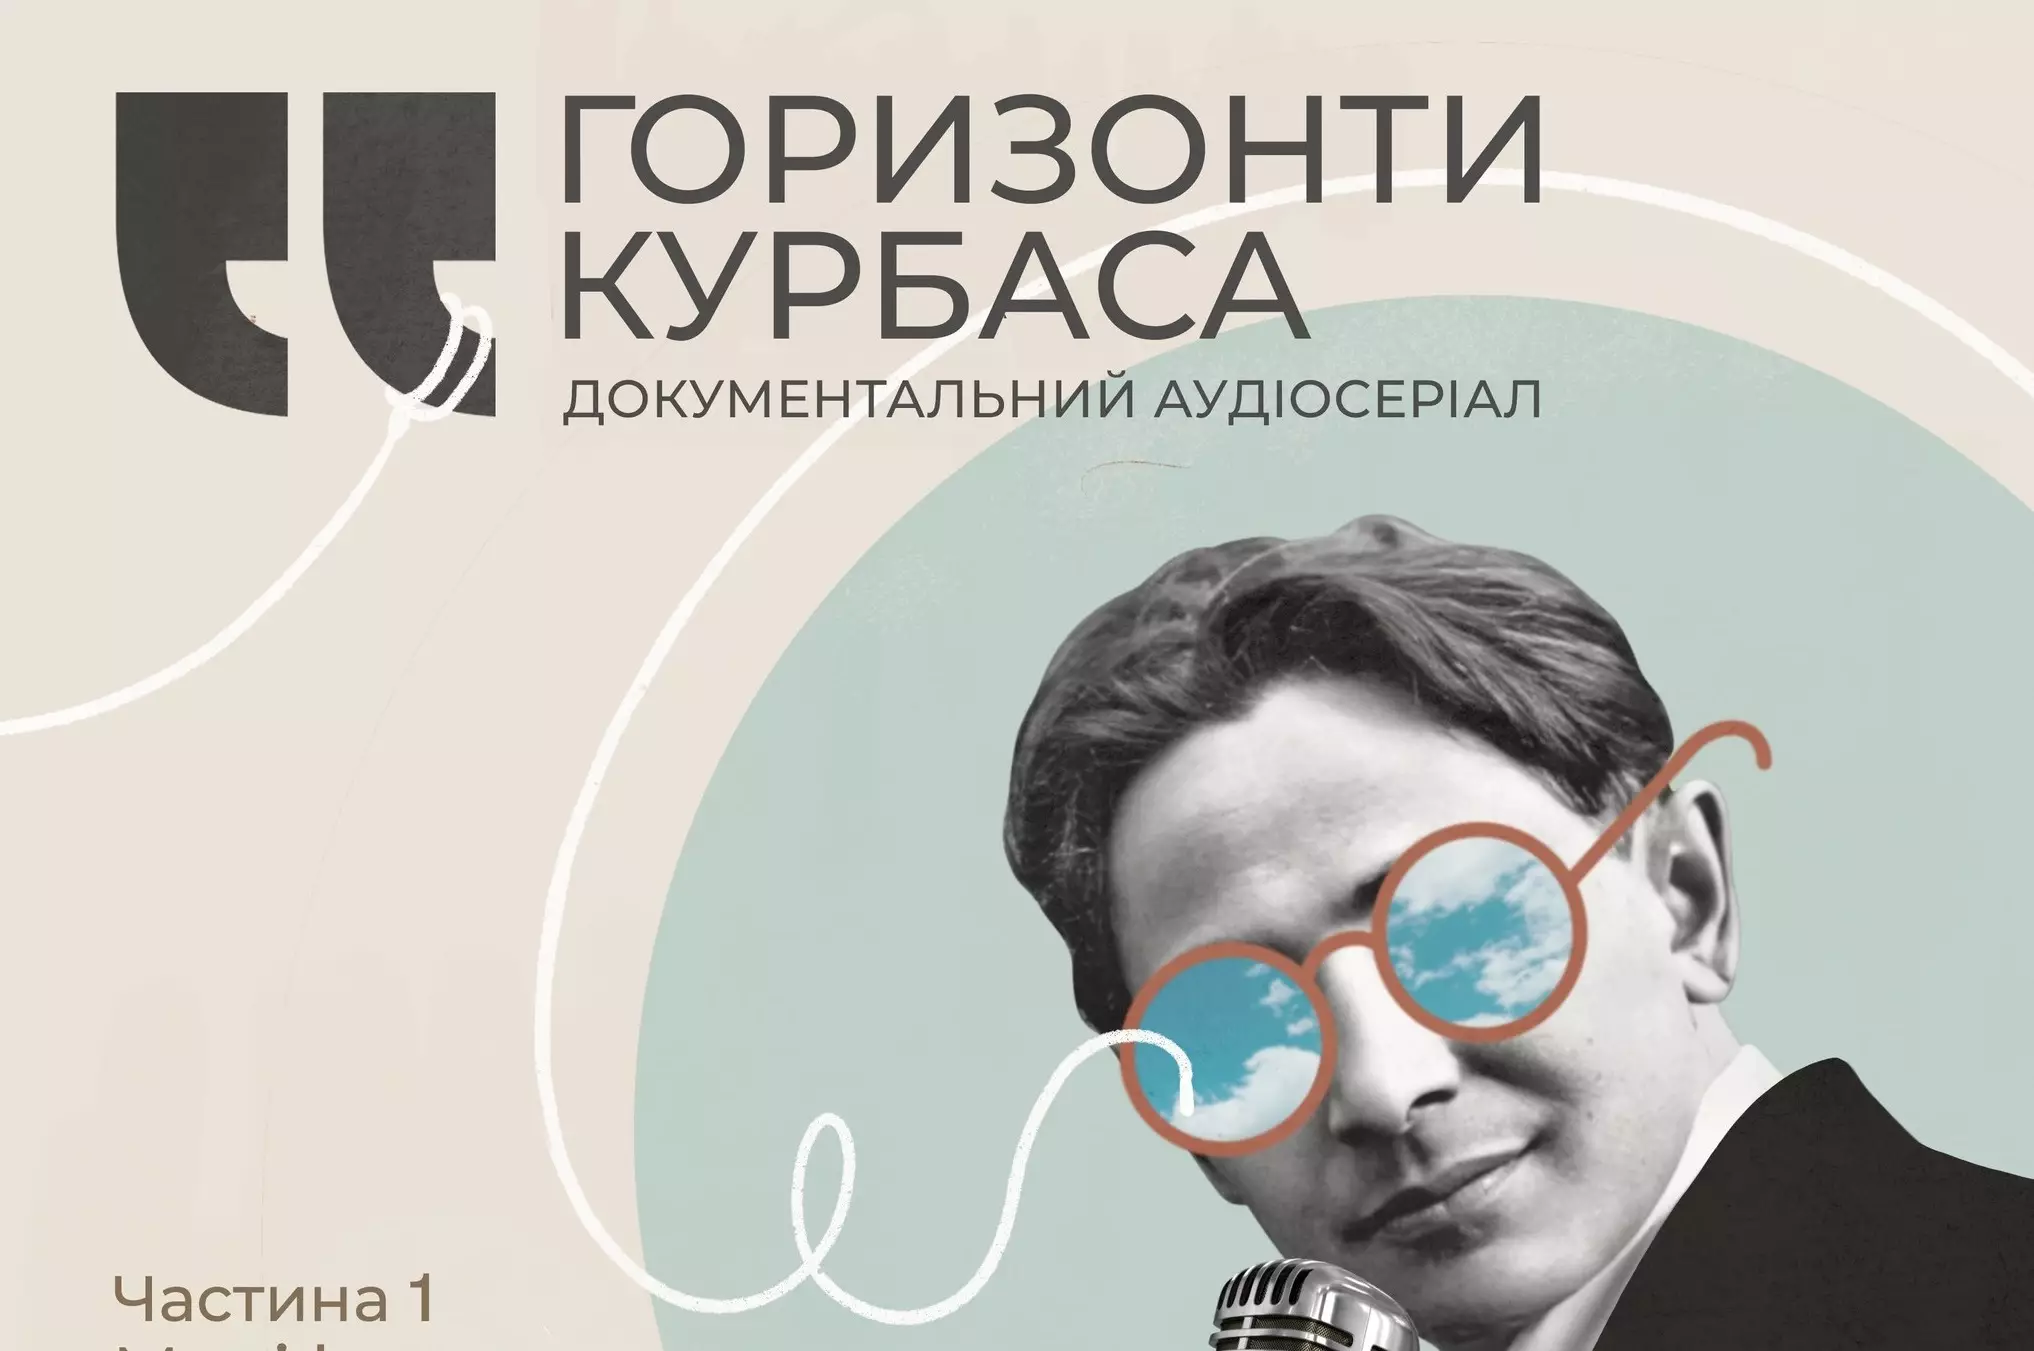 У Львові театральні митці створили аудіосеріал про Леся Курбаса